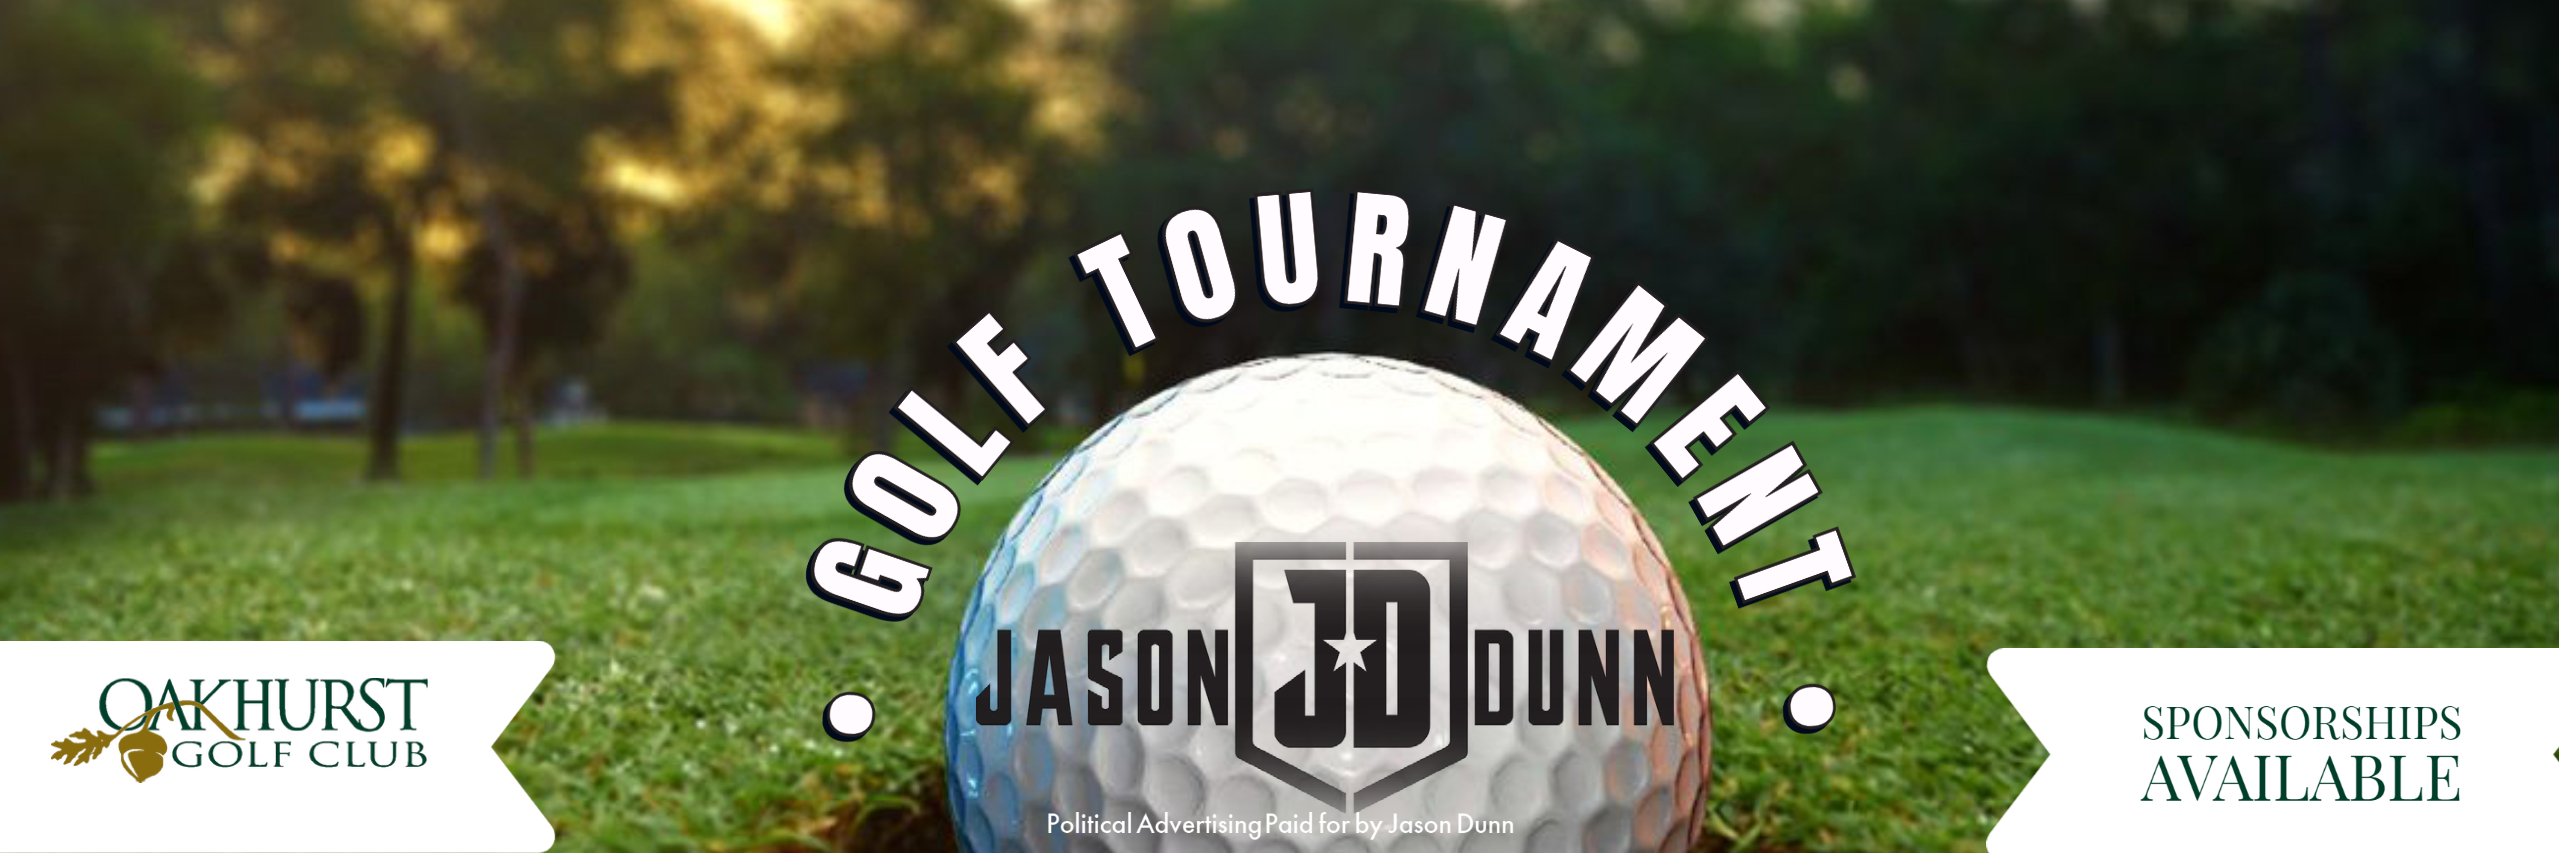 Jason Dunn Golf Tournament Registration Now Open!